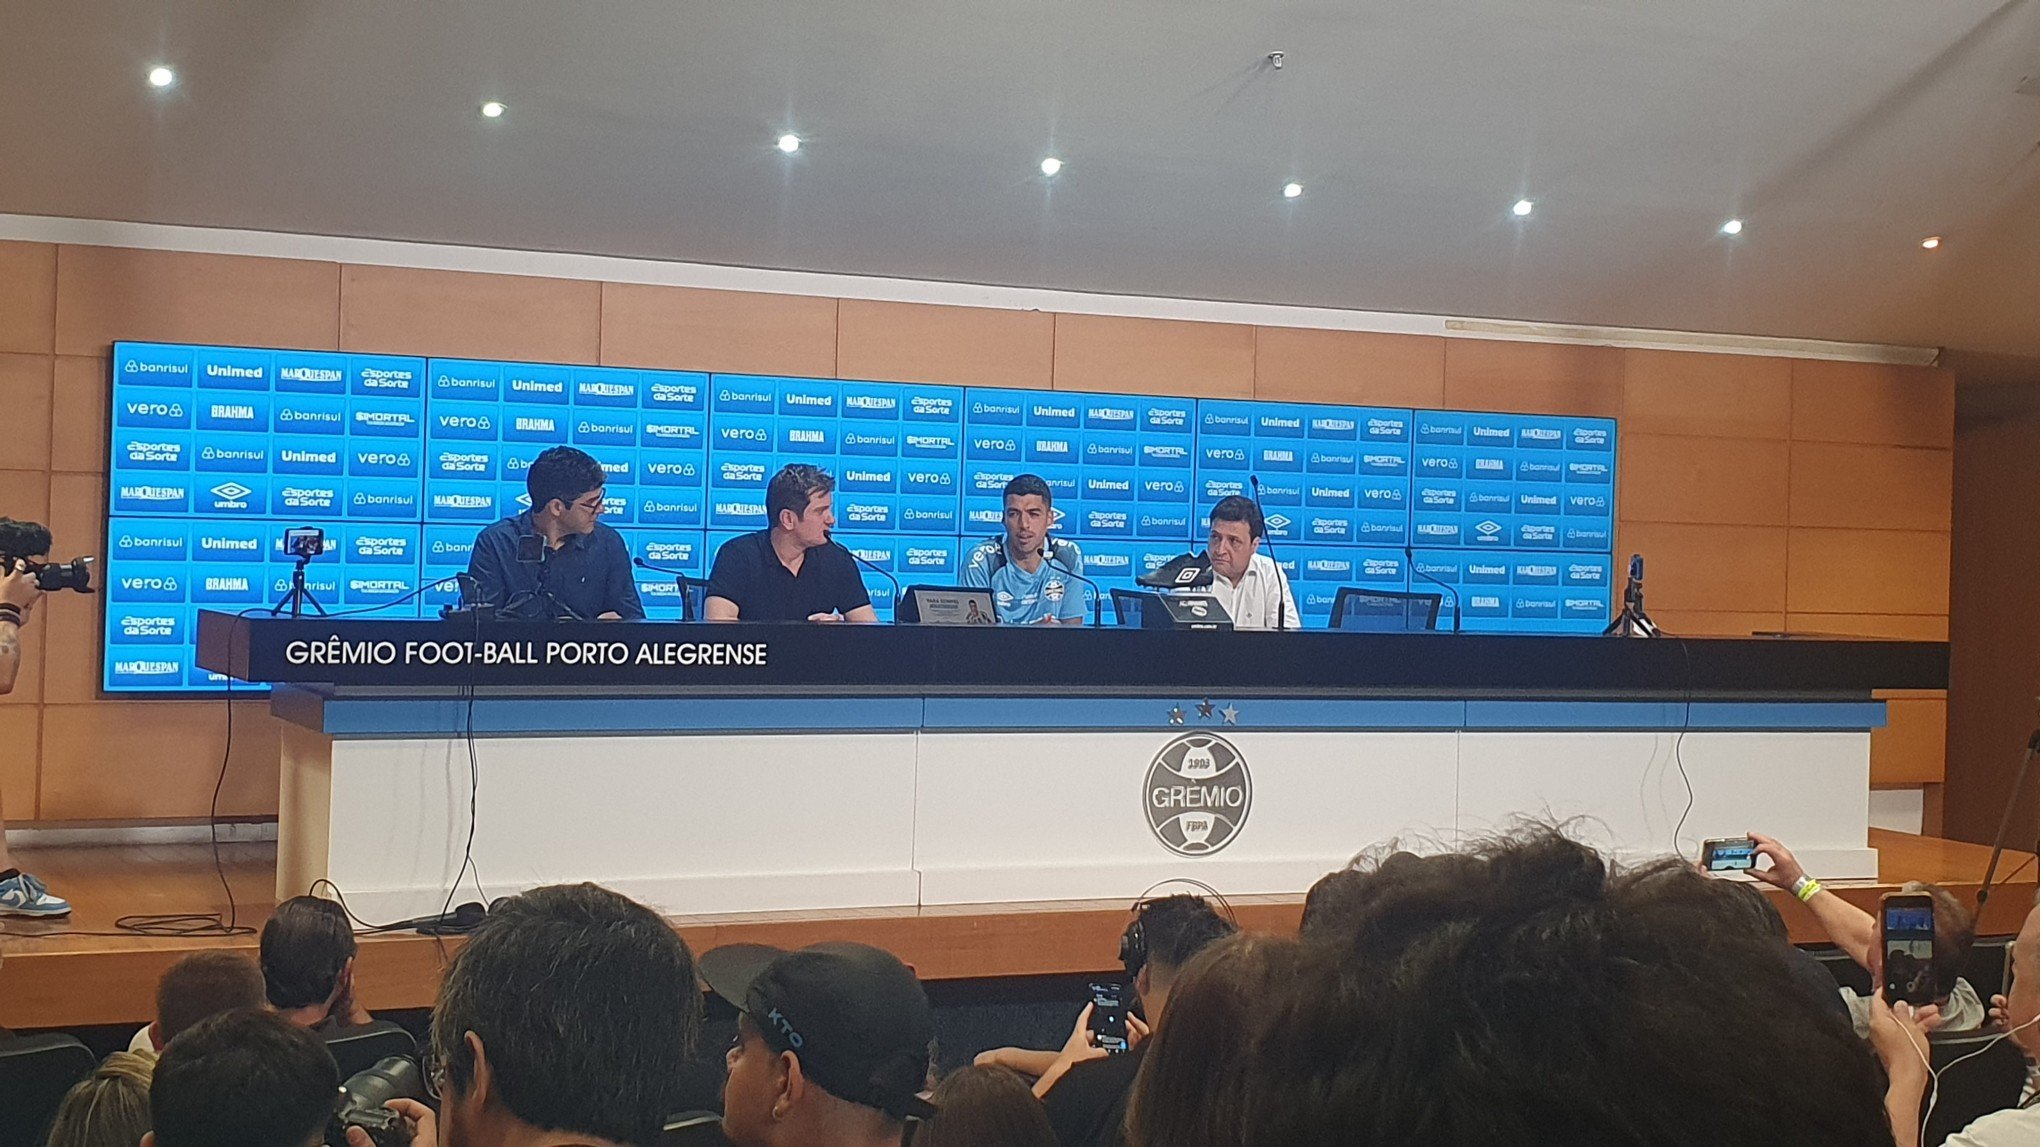 Entrega de DVD de Renato Gaúcho, decisão de saída e perspectivas para o futuro; confira o que Luis Suárez disse após último jogo na Arena